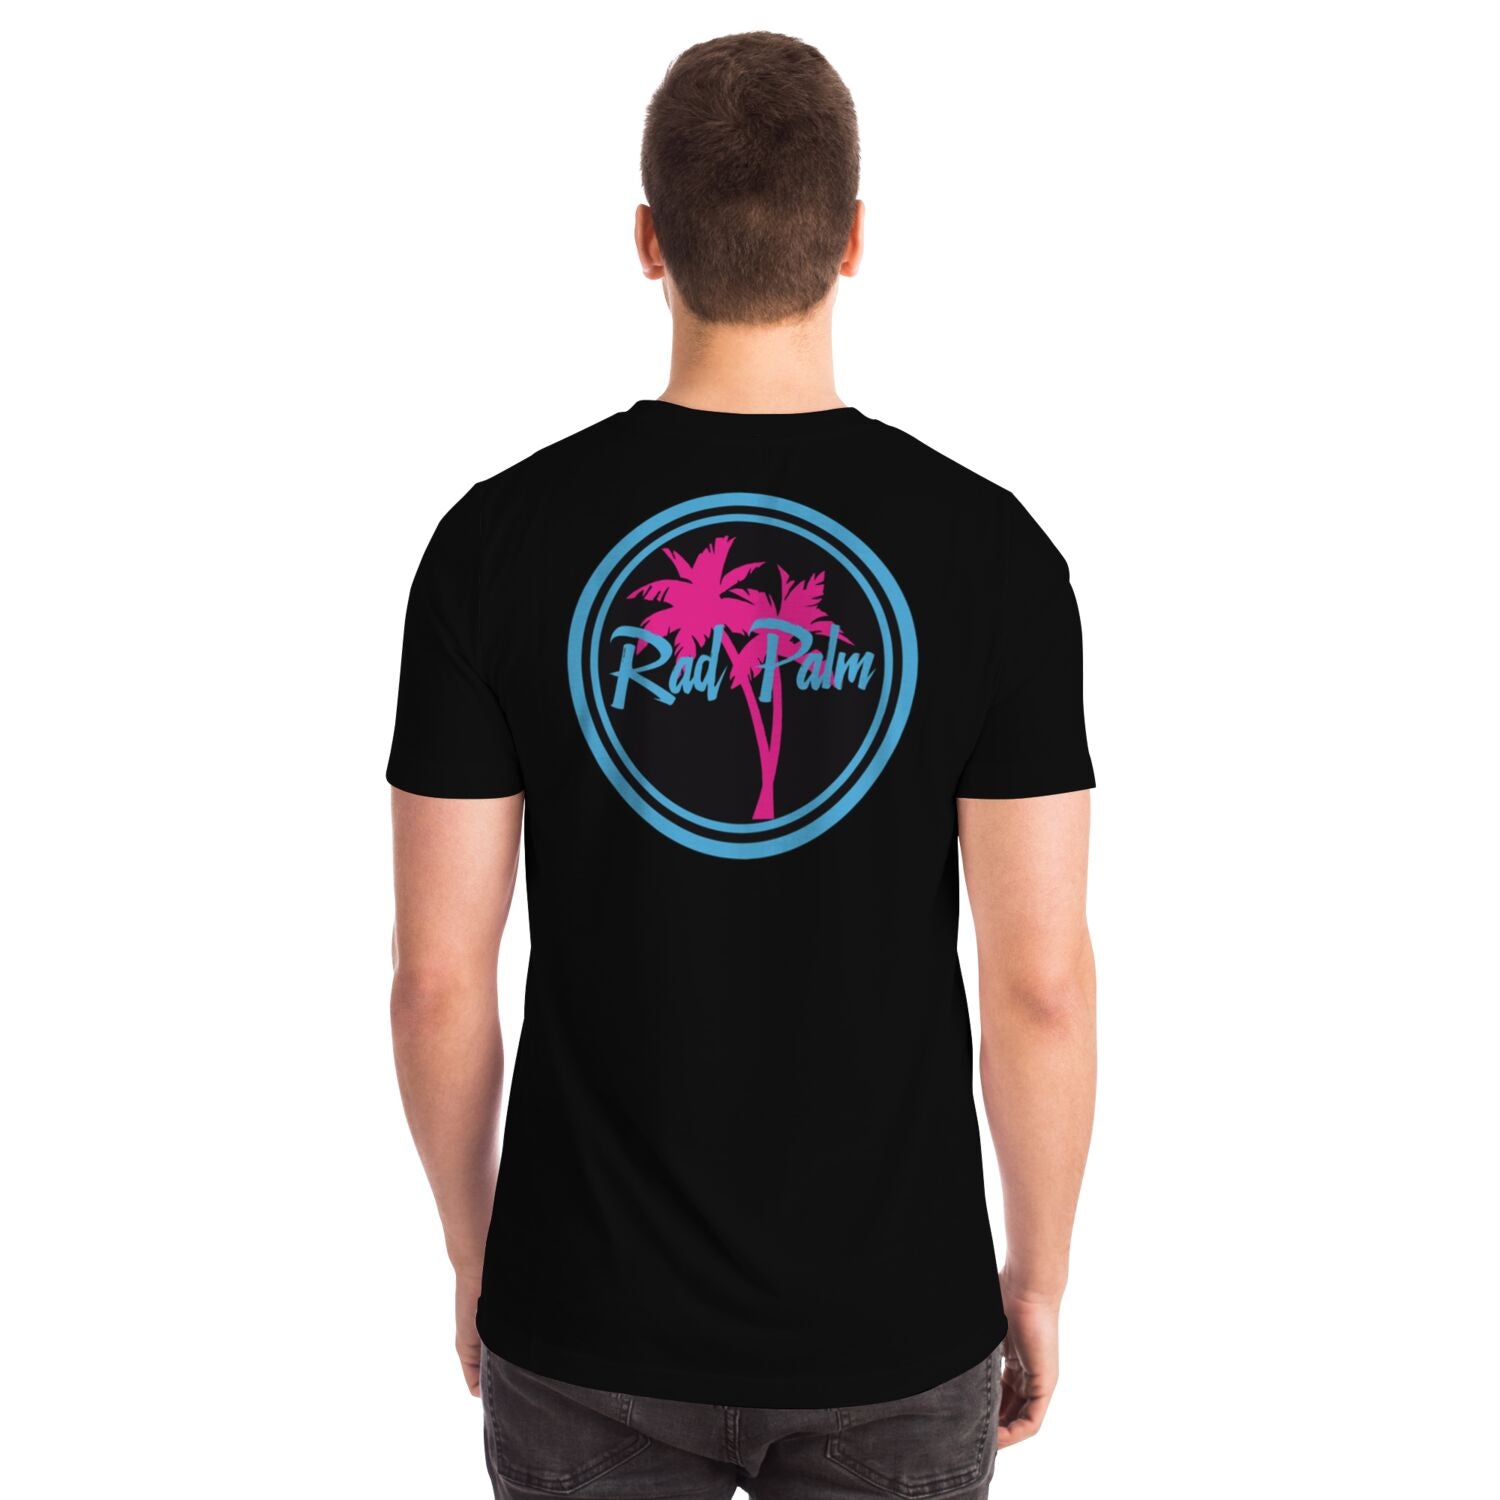 Rad Palm Logo T-Shirt